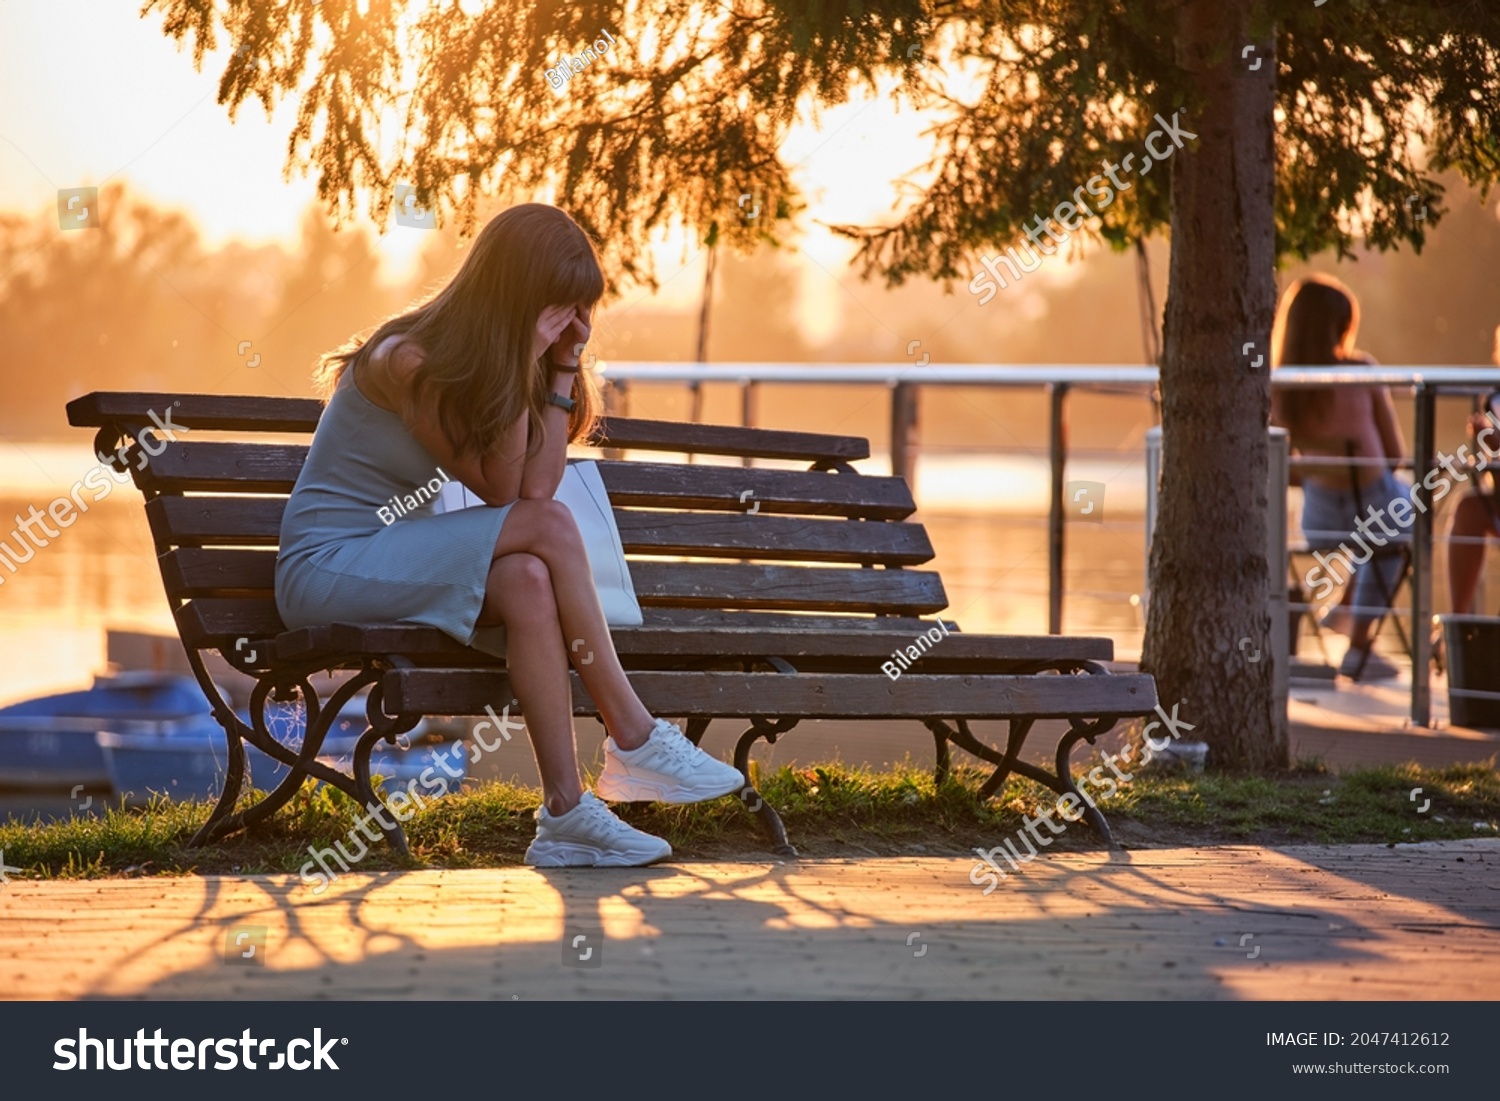 Sad Girl Sitting On Bench 6 678 Images Photos Et Images Vectorielles De Stock Shutterstock 5281